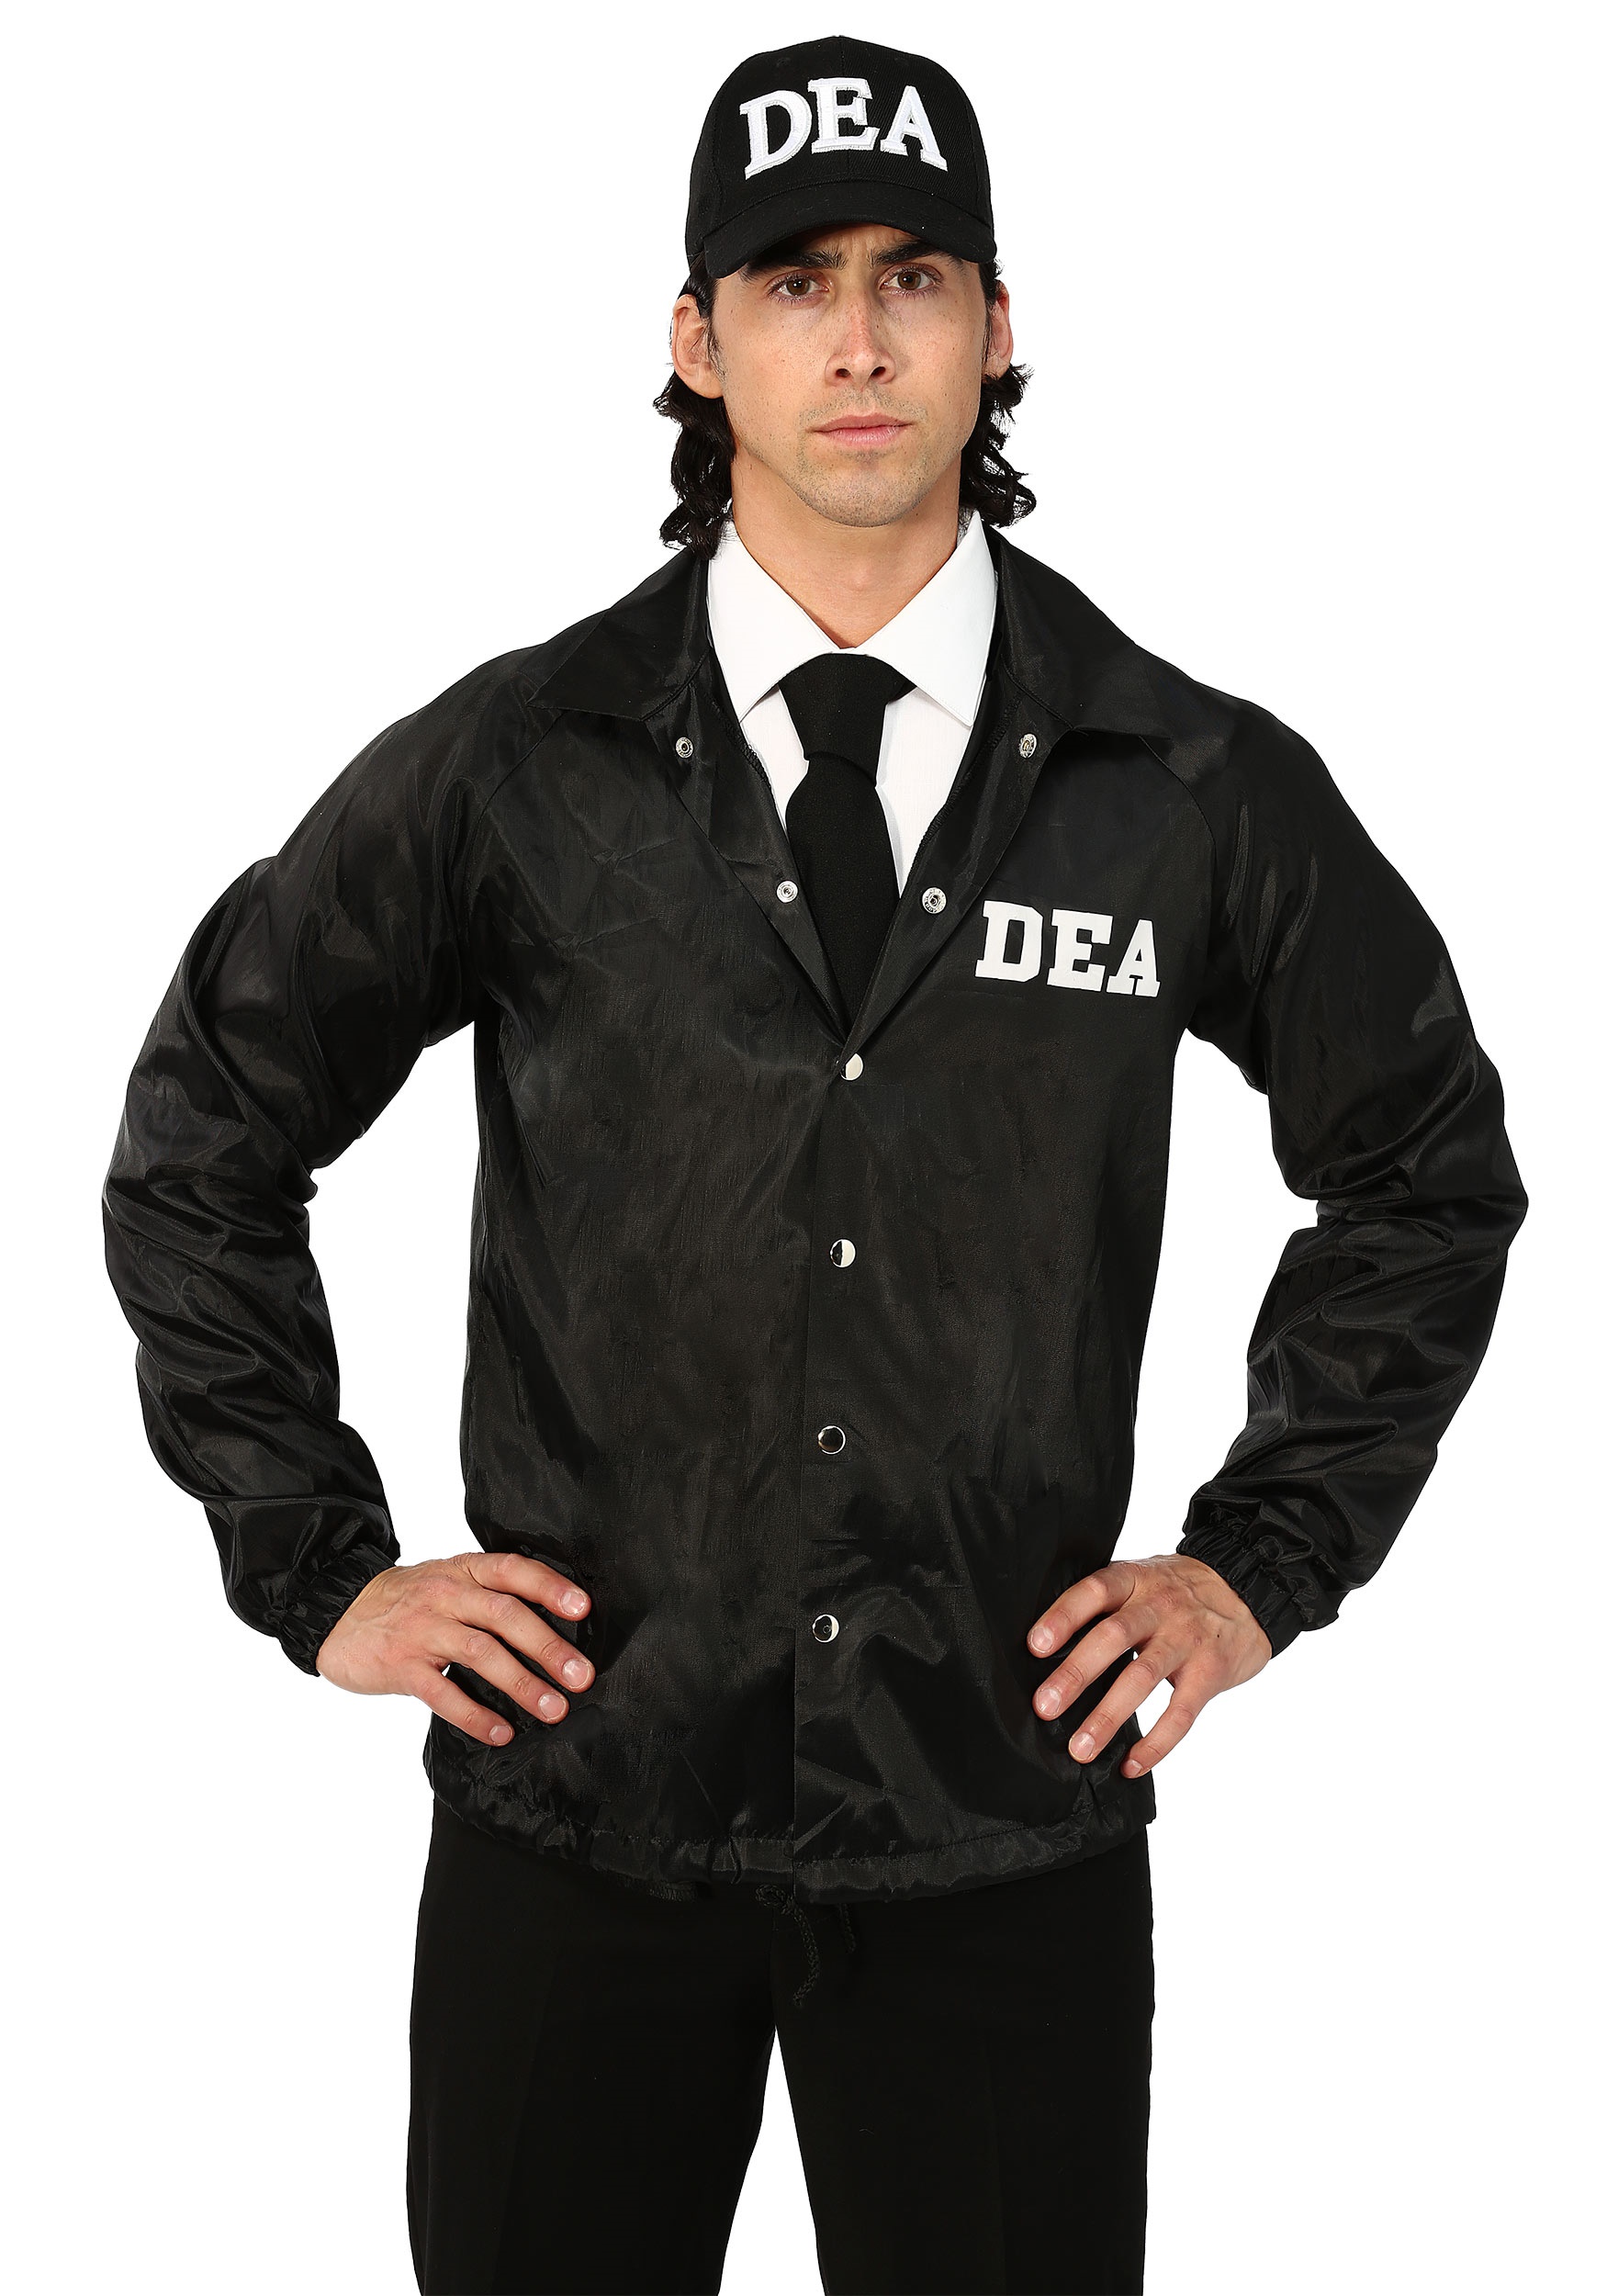 DEA Agent Men's Costume